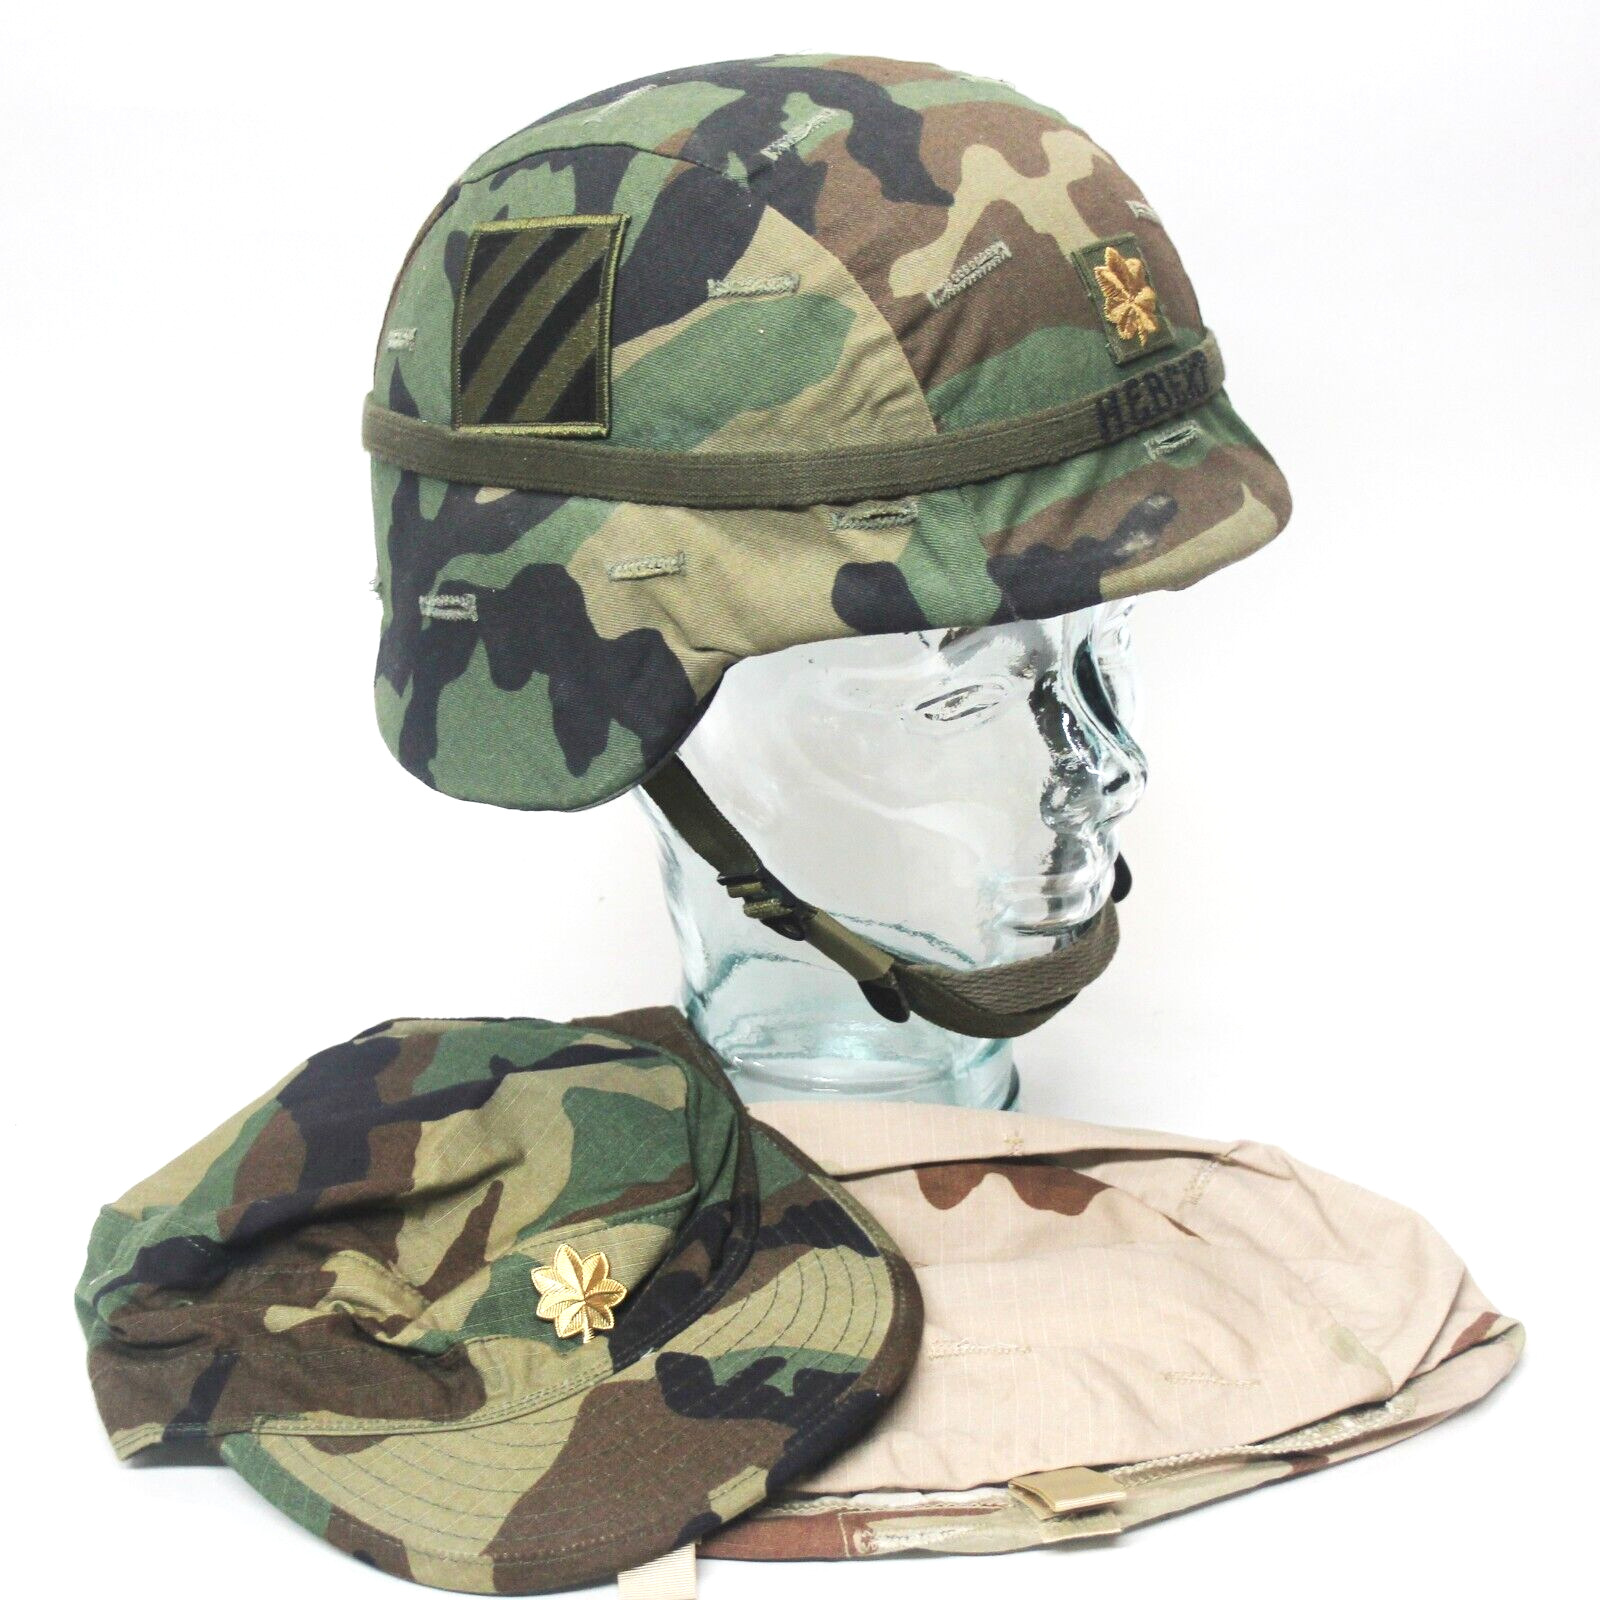 1990s PASGT helmet medium 3rd Infantry USGI w/ desert cover patrol cap GWOT LBT